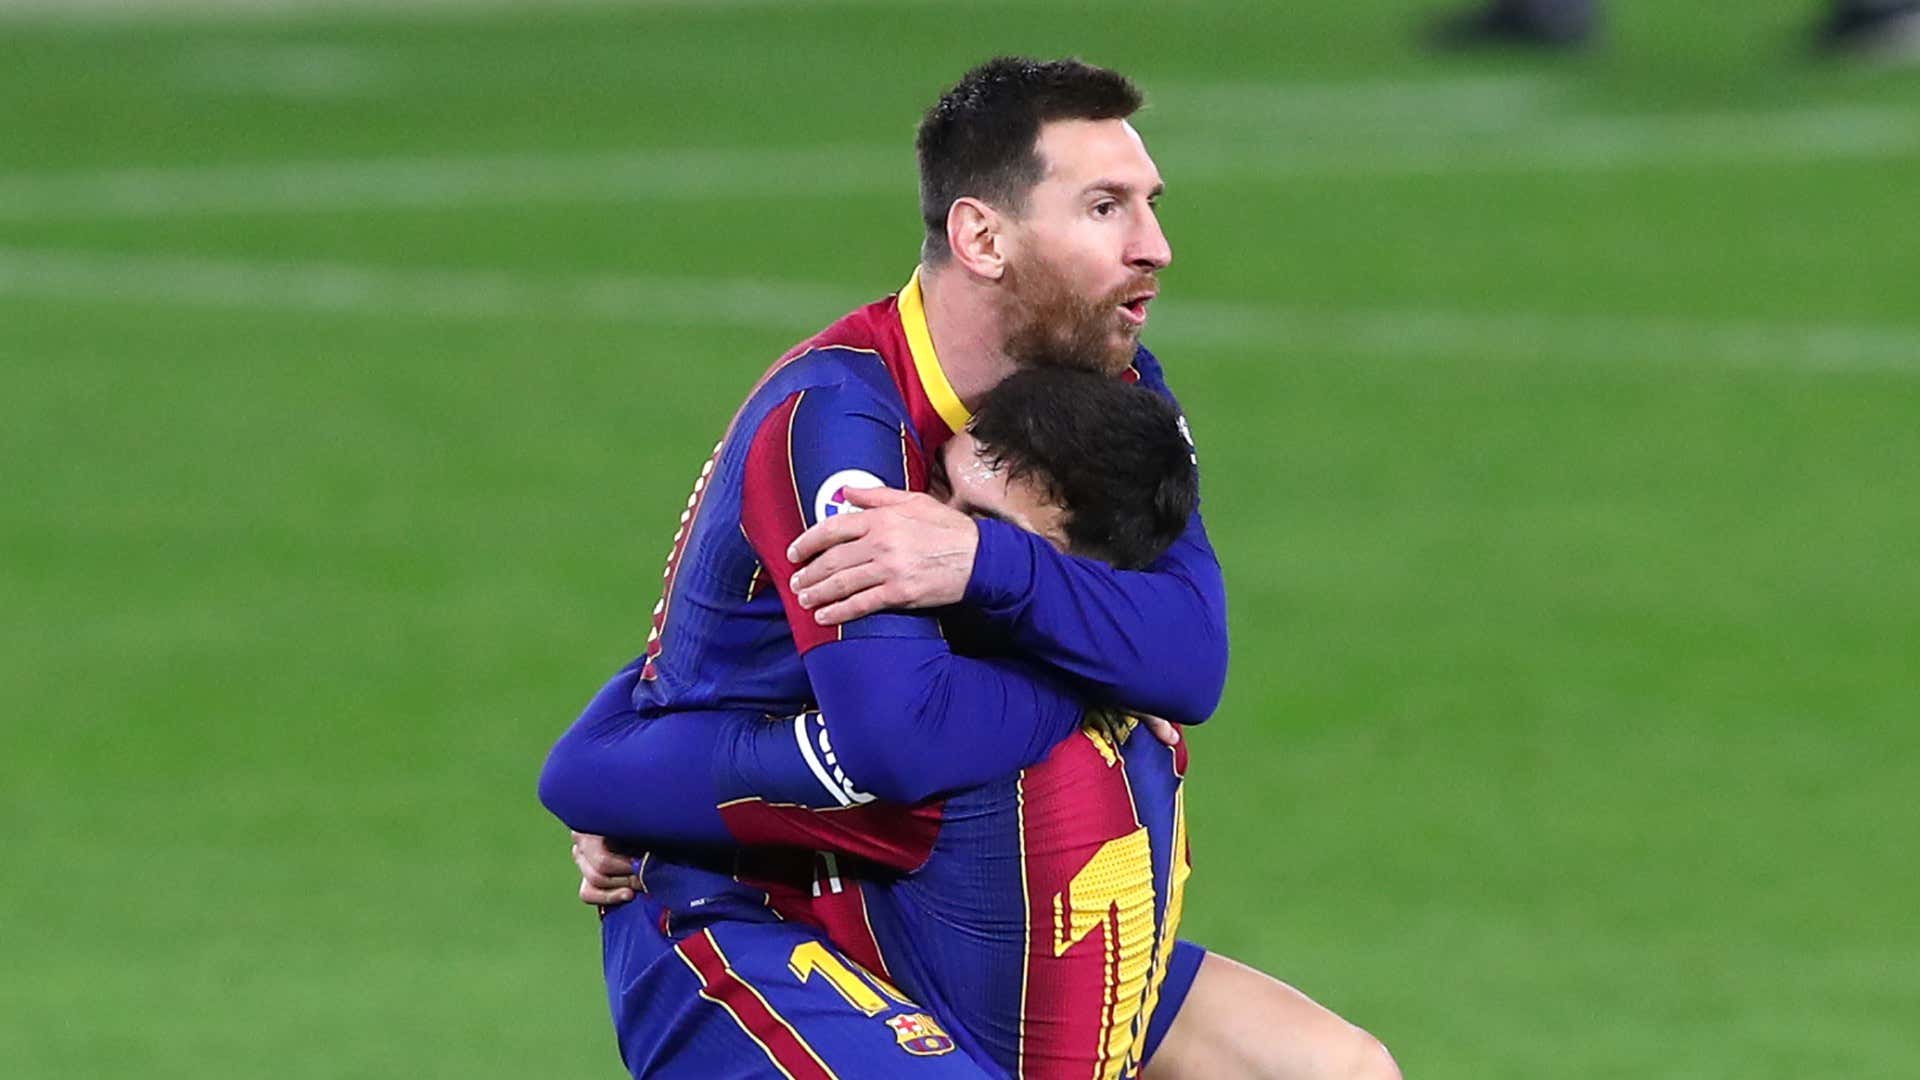 Messi Pedri Barcelona 2021